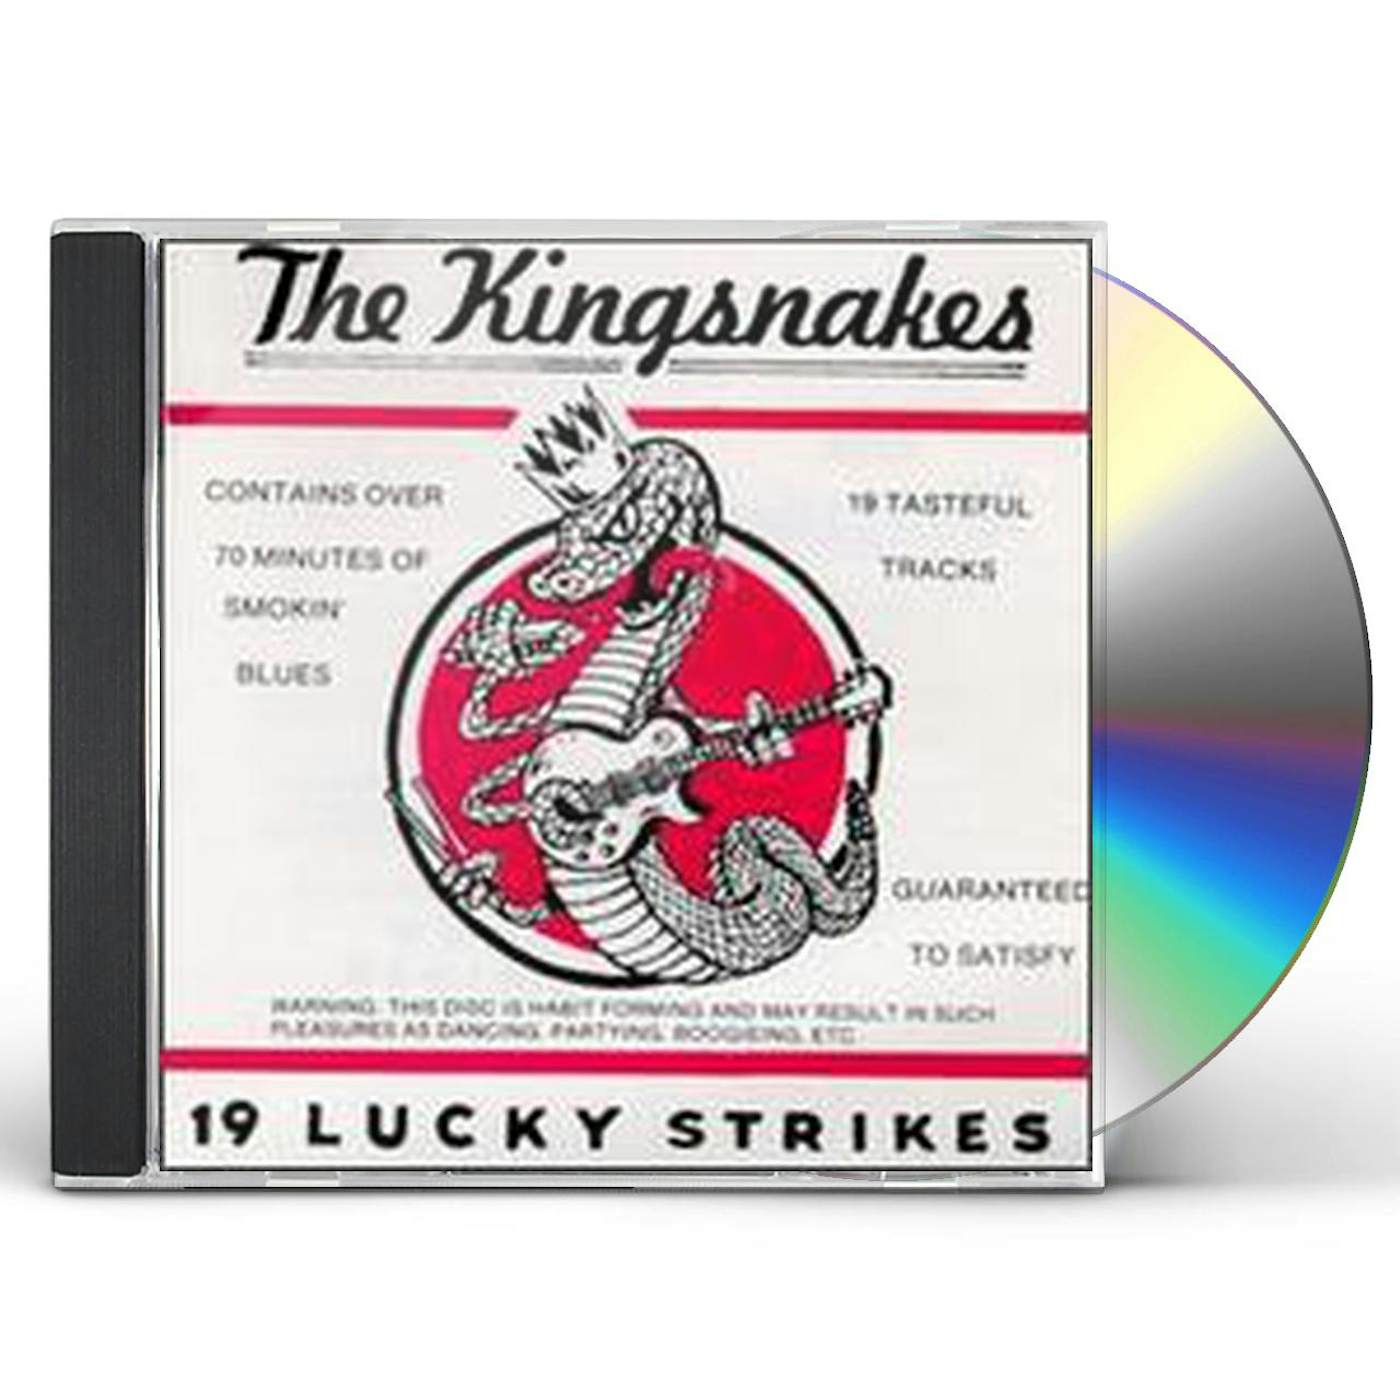 Kingsnakes 19 LUCKY STRIKES CD